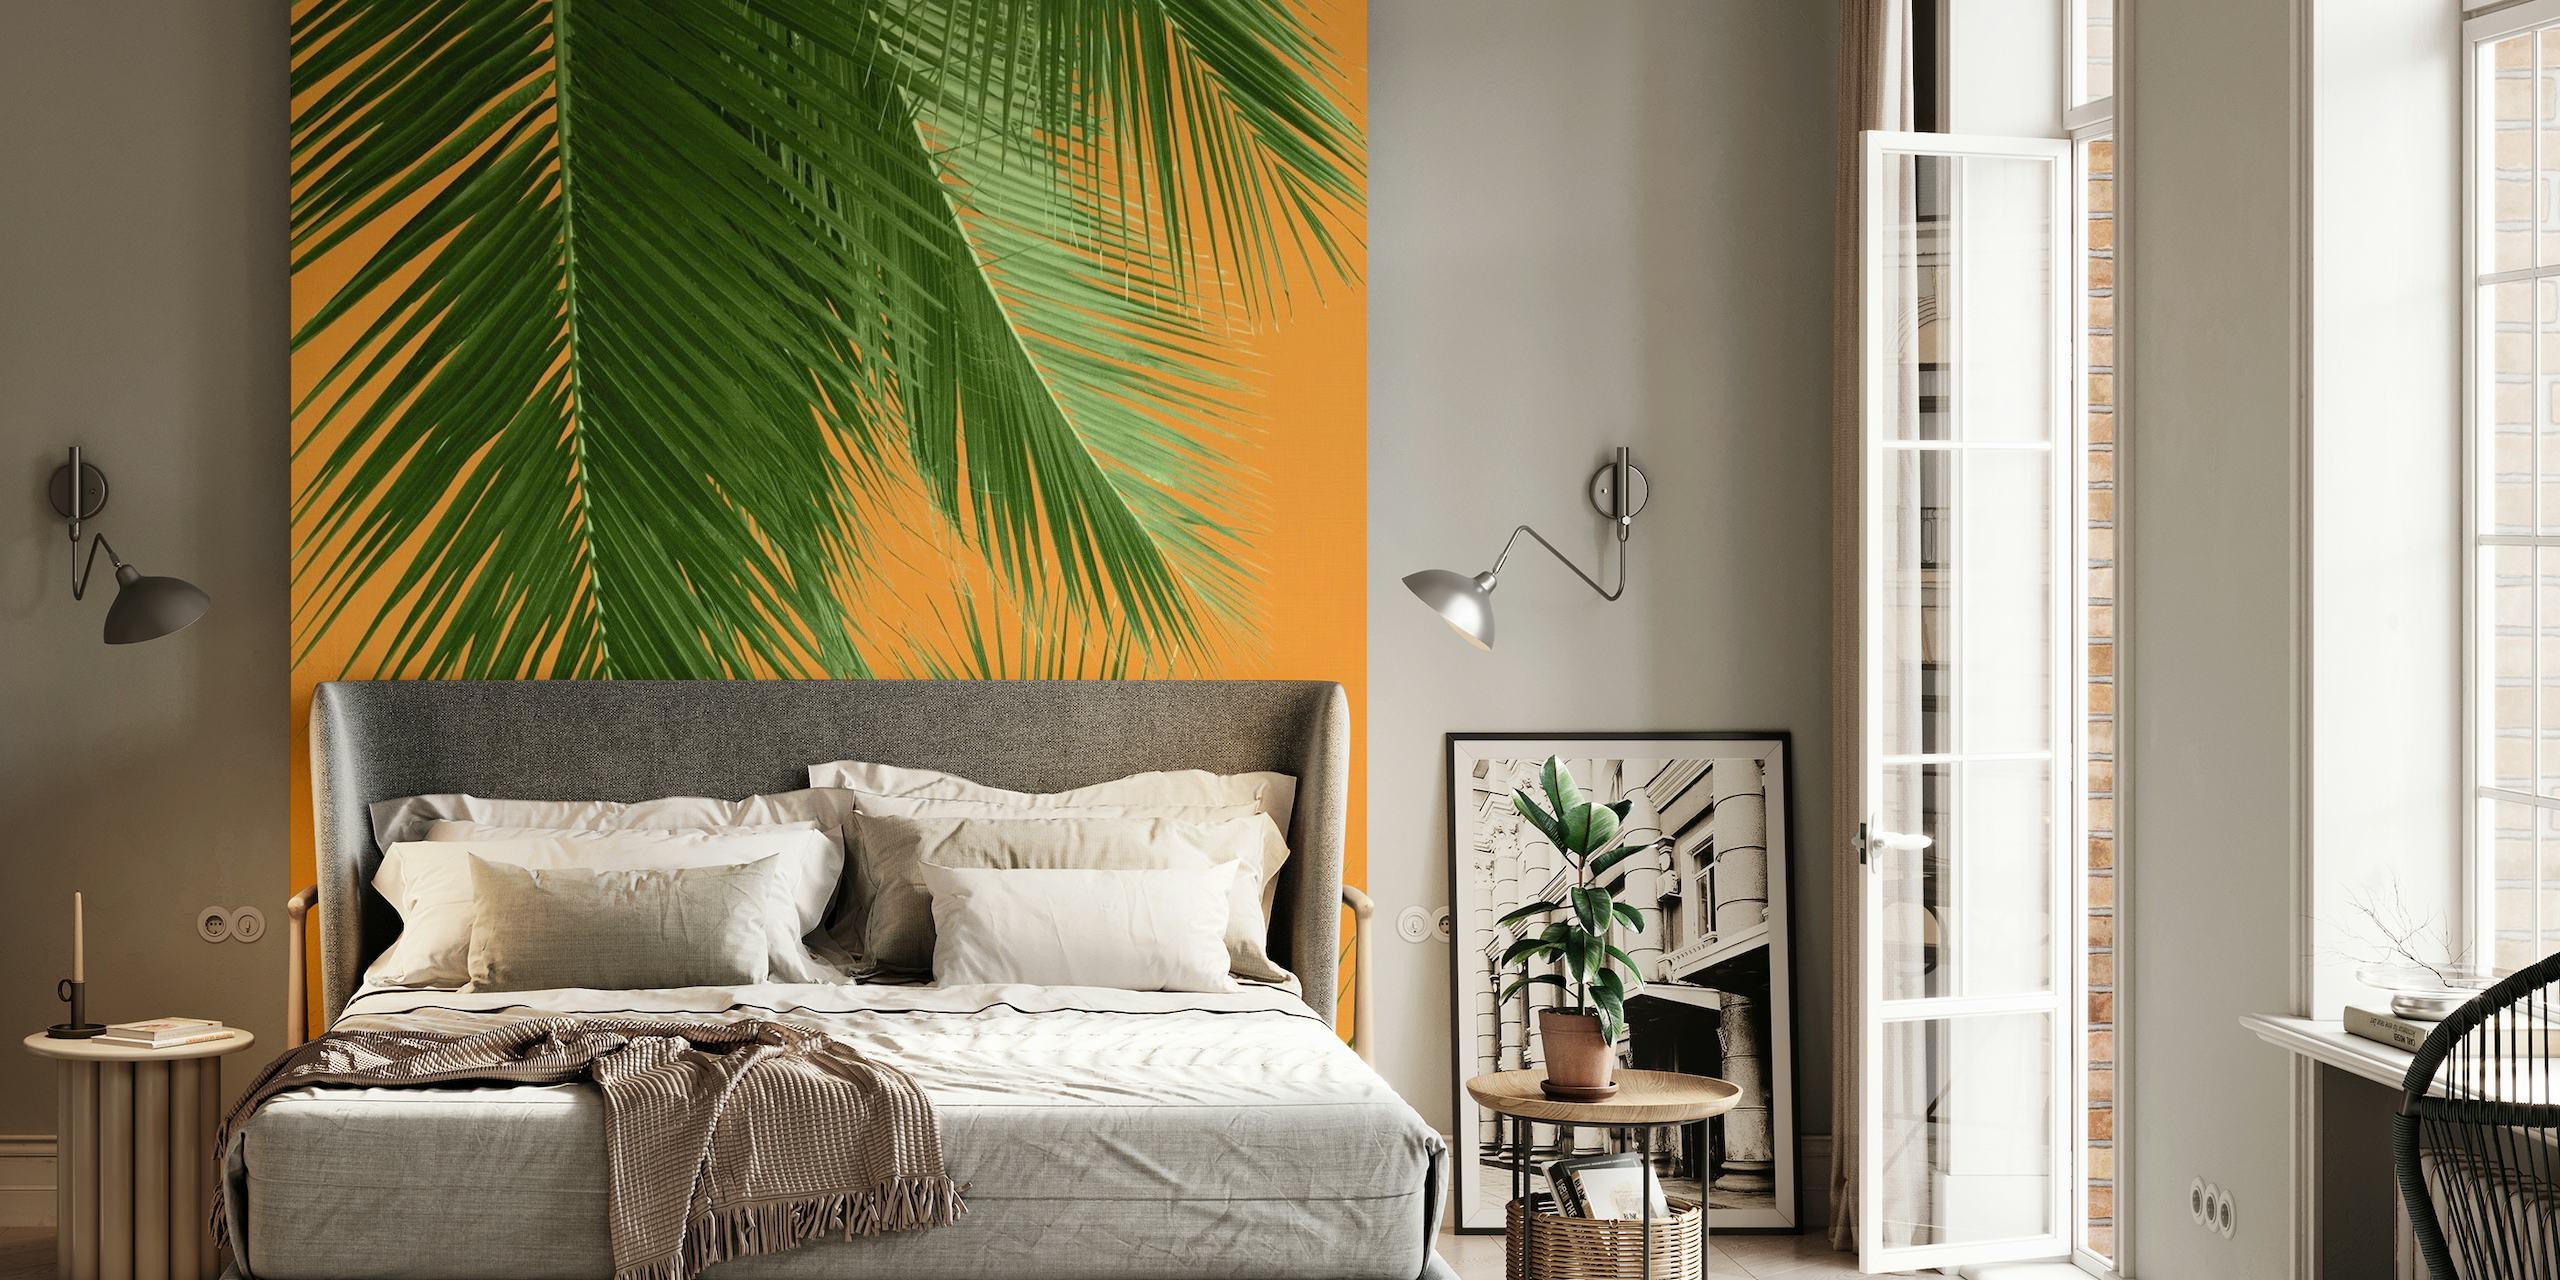 Padrão de folhas de palmeira verde no fotomural vinílico de fundo laranja